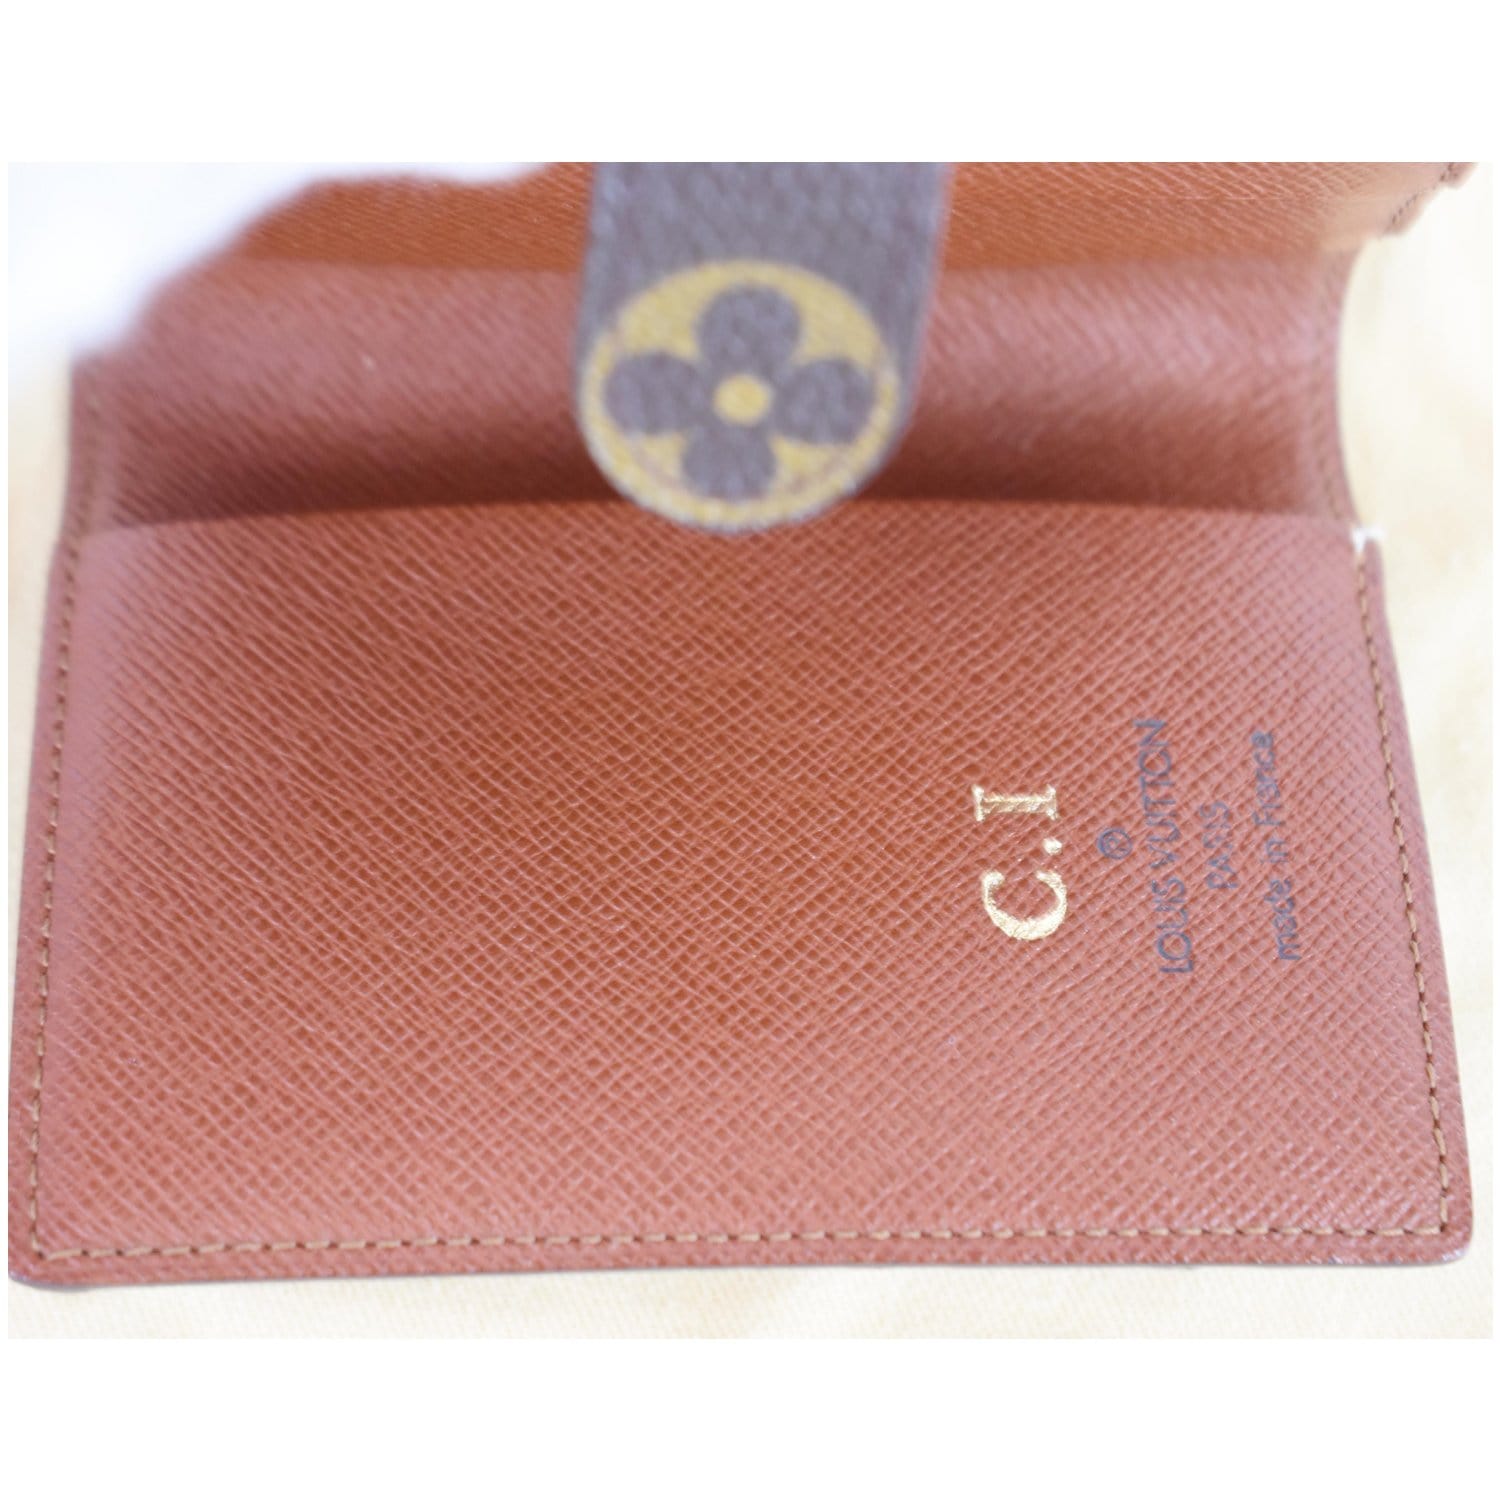 Louis Vuitton Monogram Mini Agenda Notebook Cover﻿